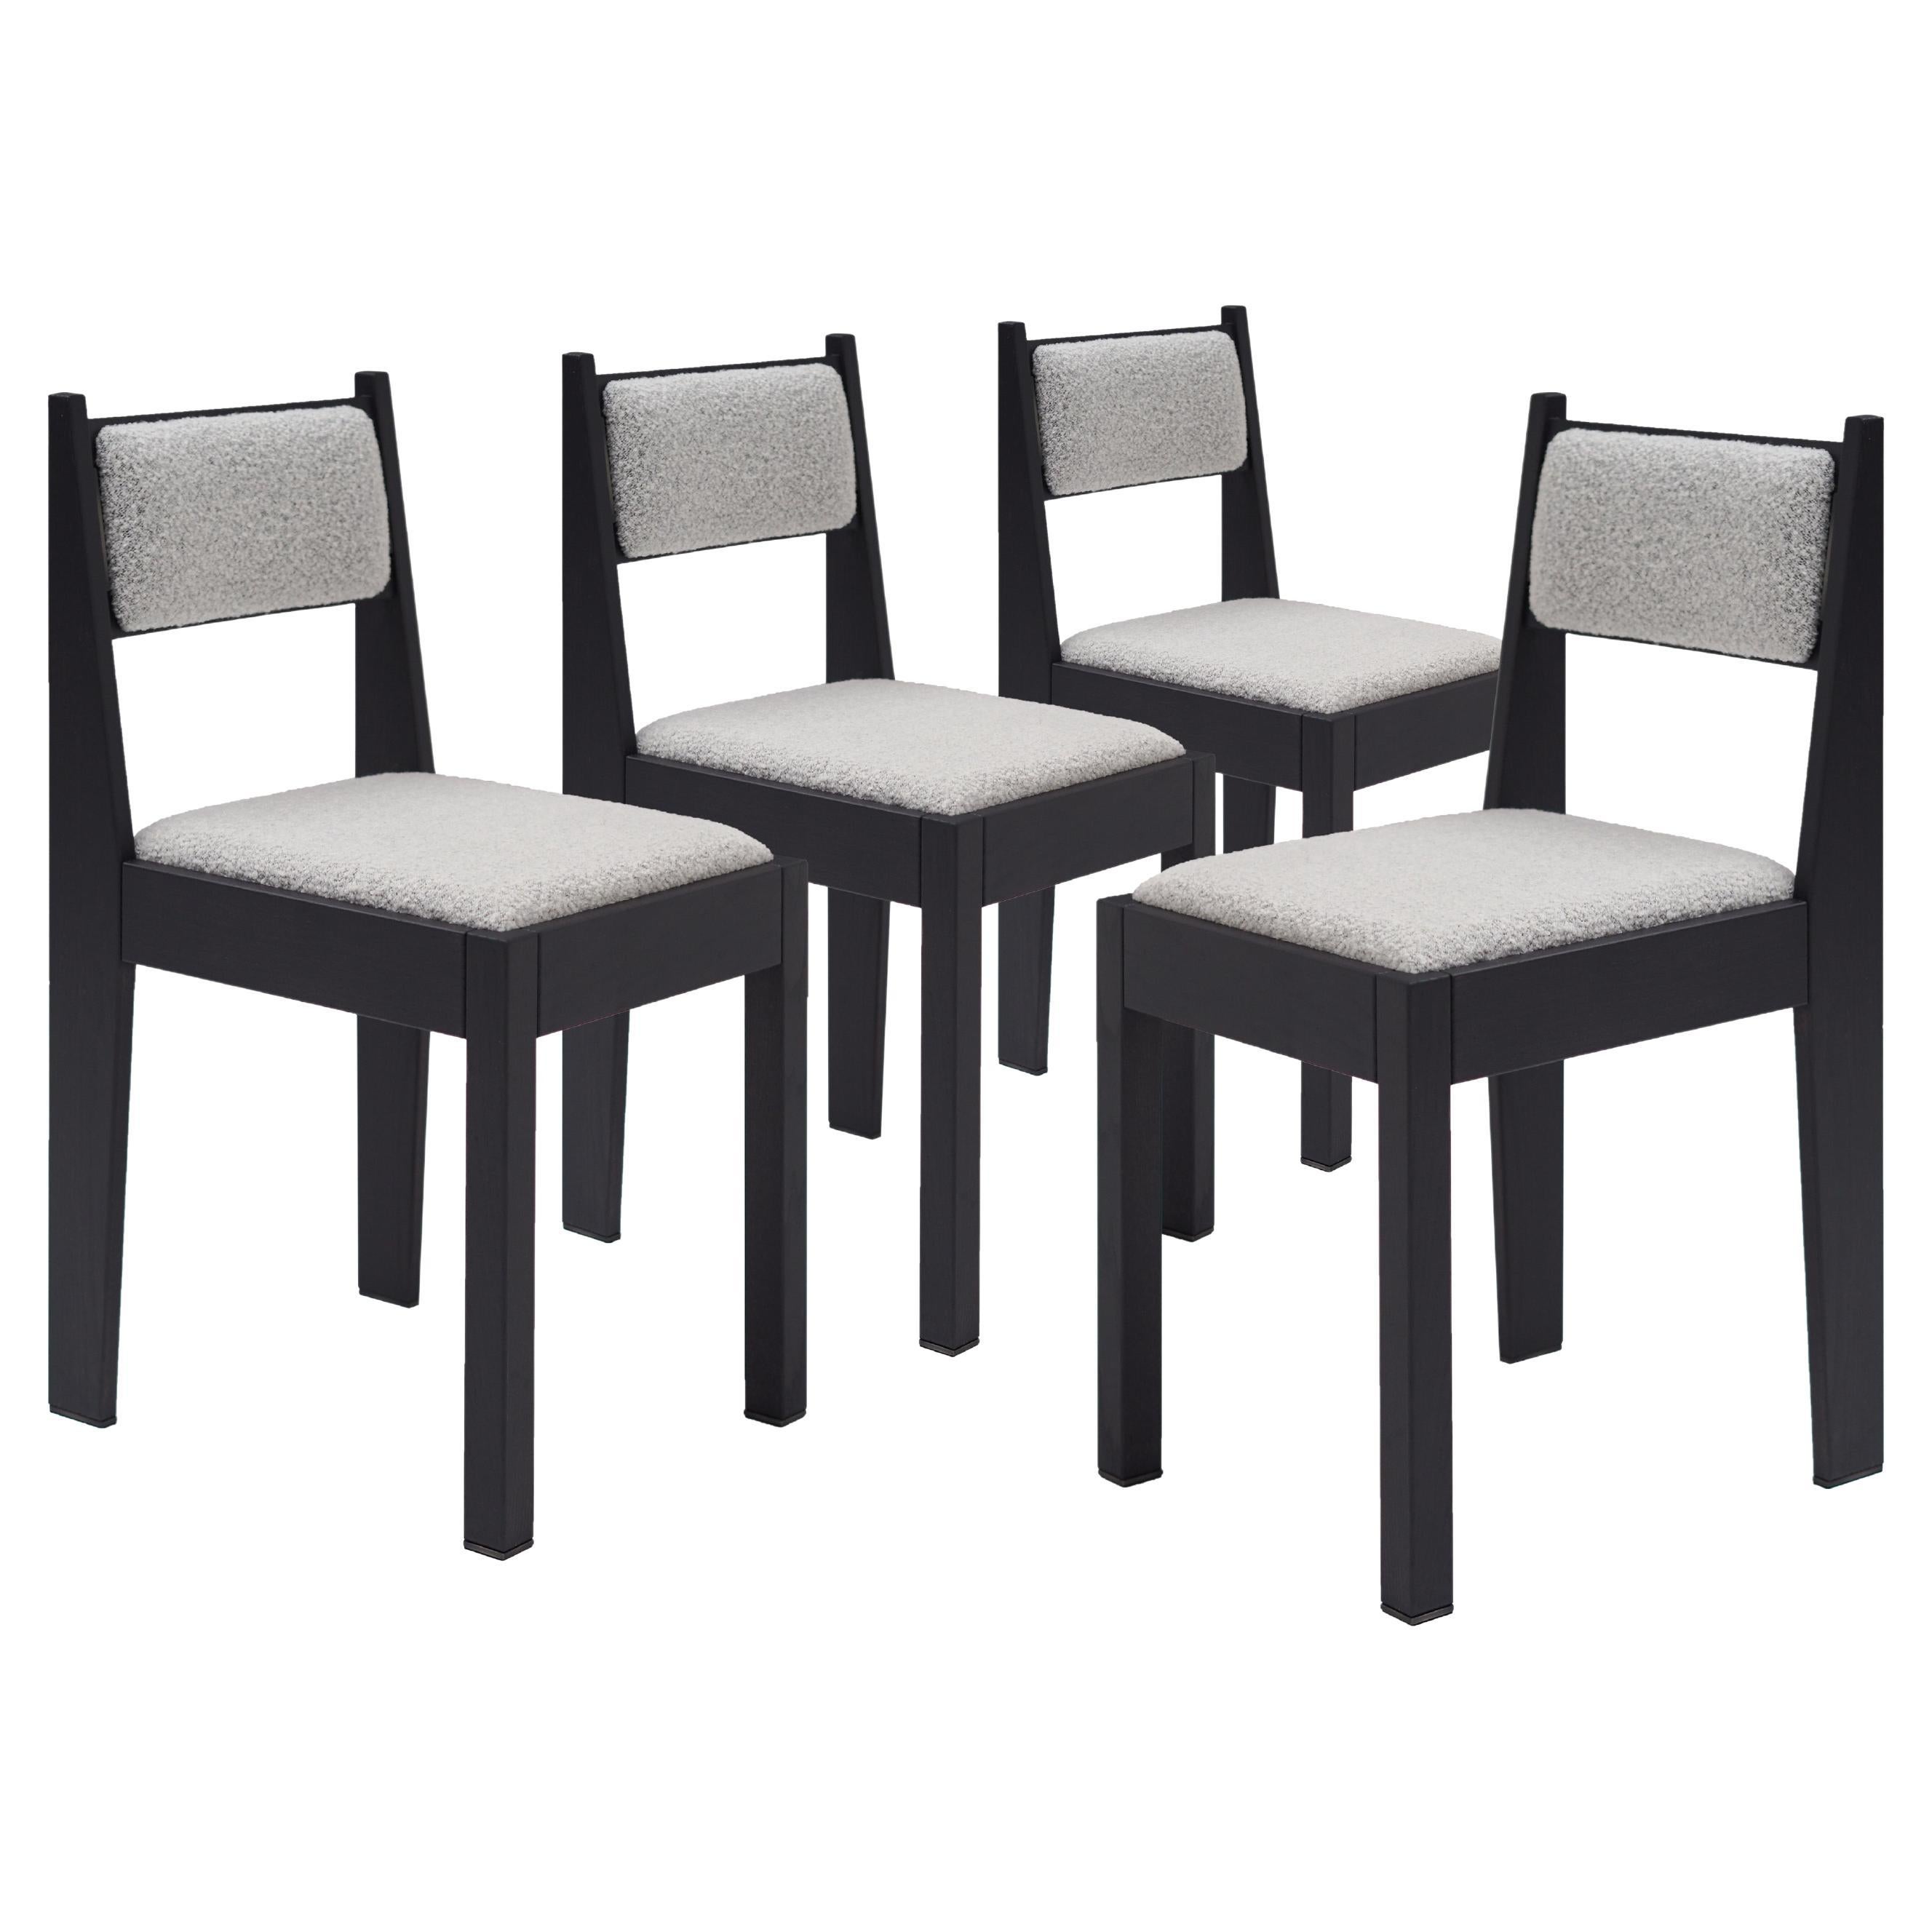 Satz von 4 Art-Déco-Stühlen, schwarzes Eschenholz, weiße Polsterung und Bronzedetails